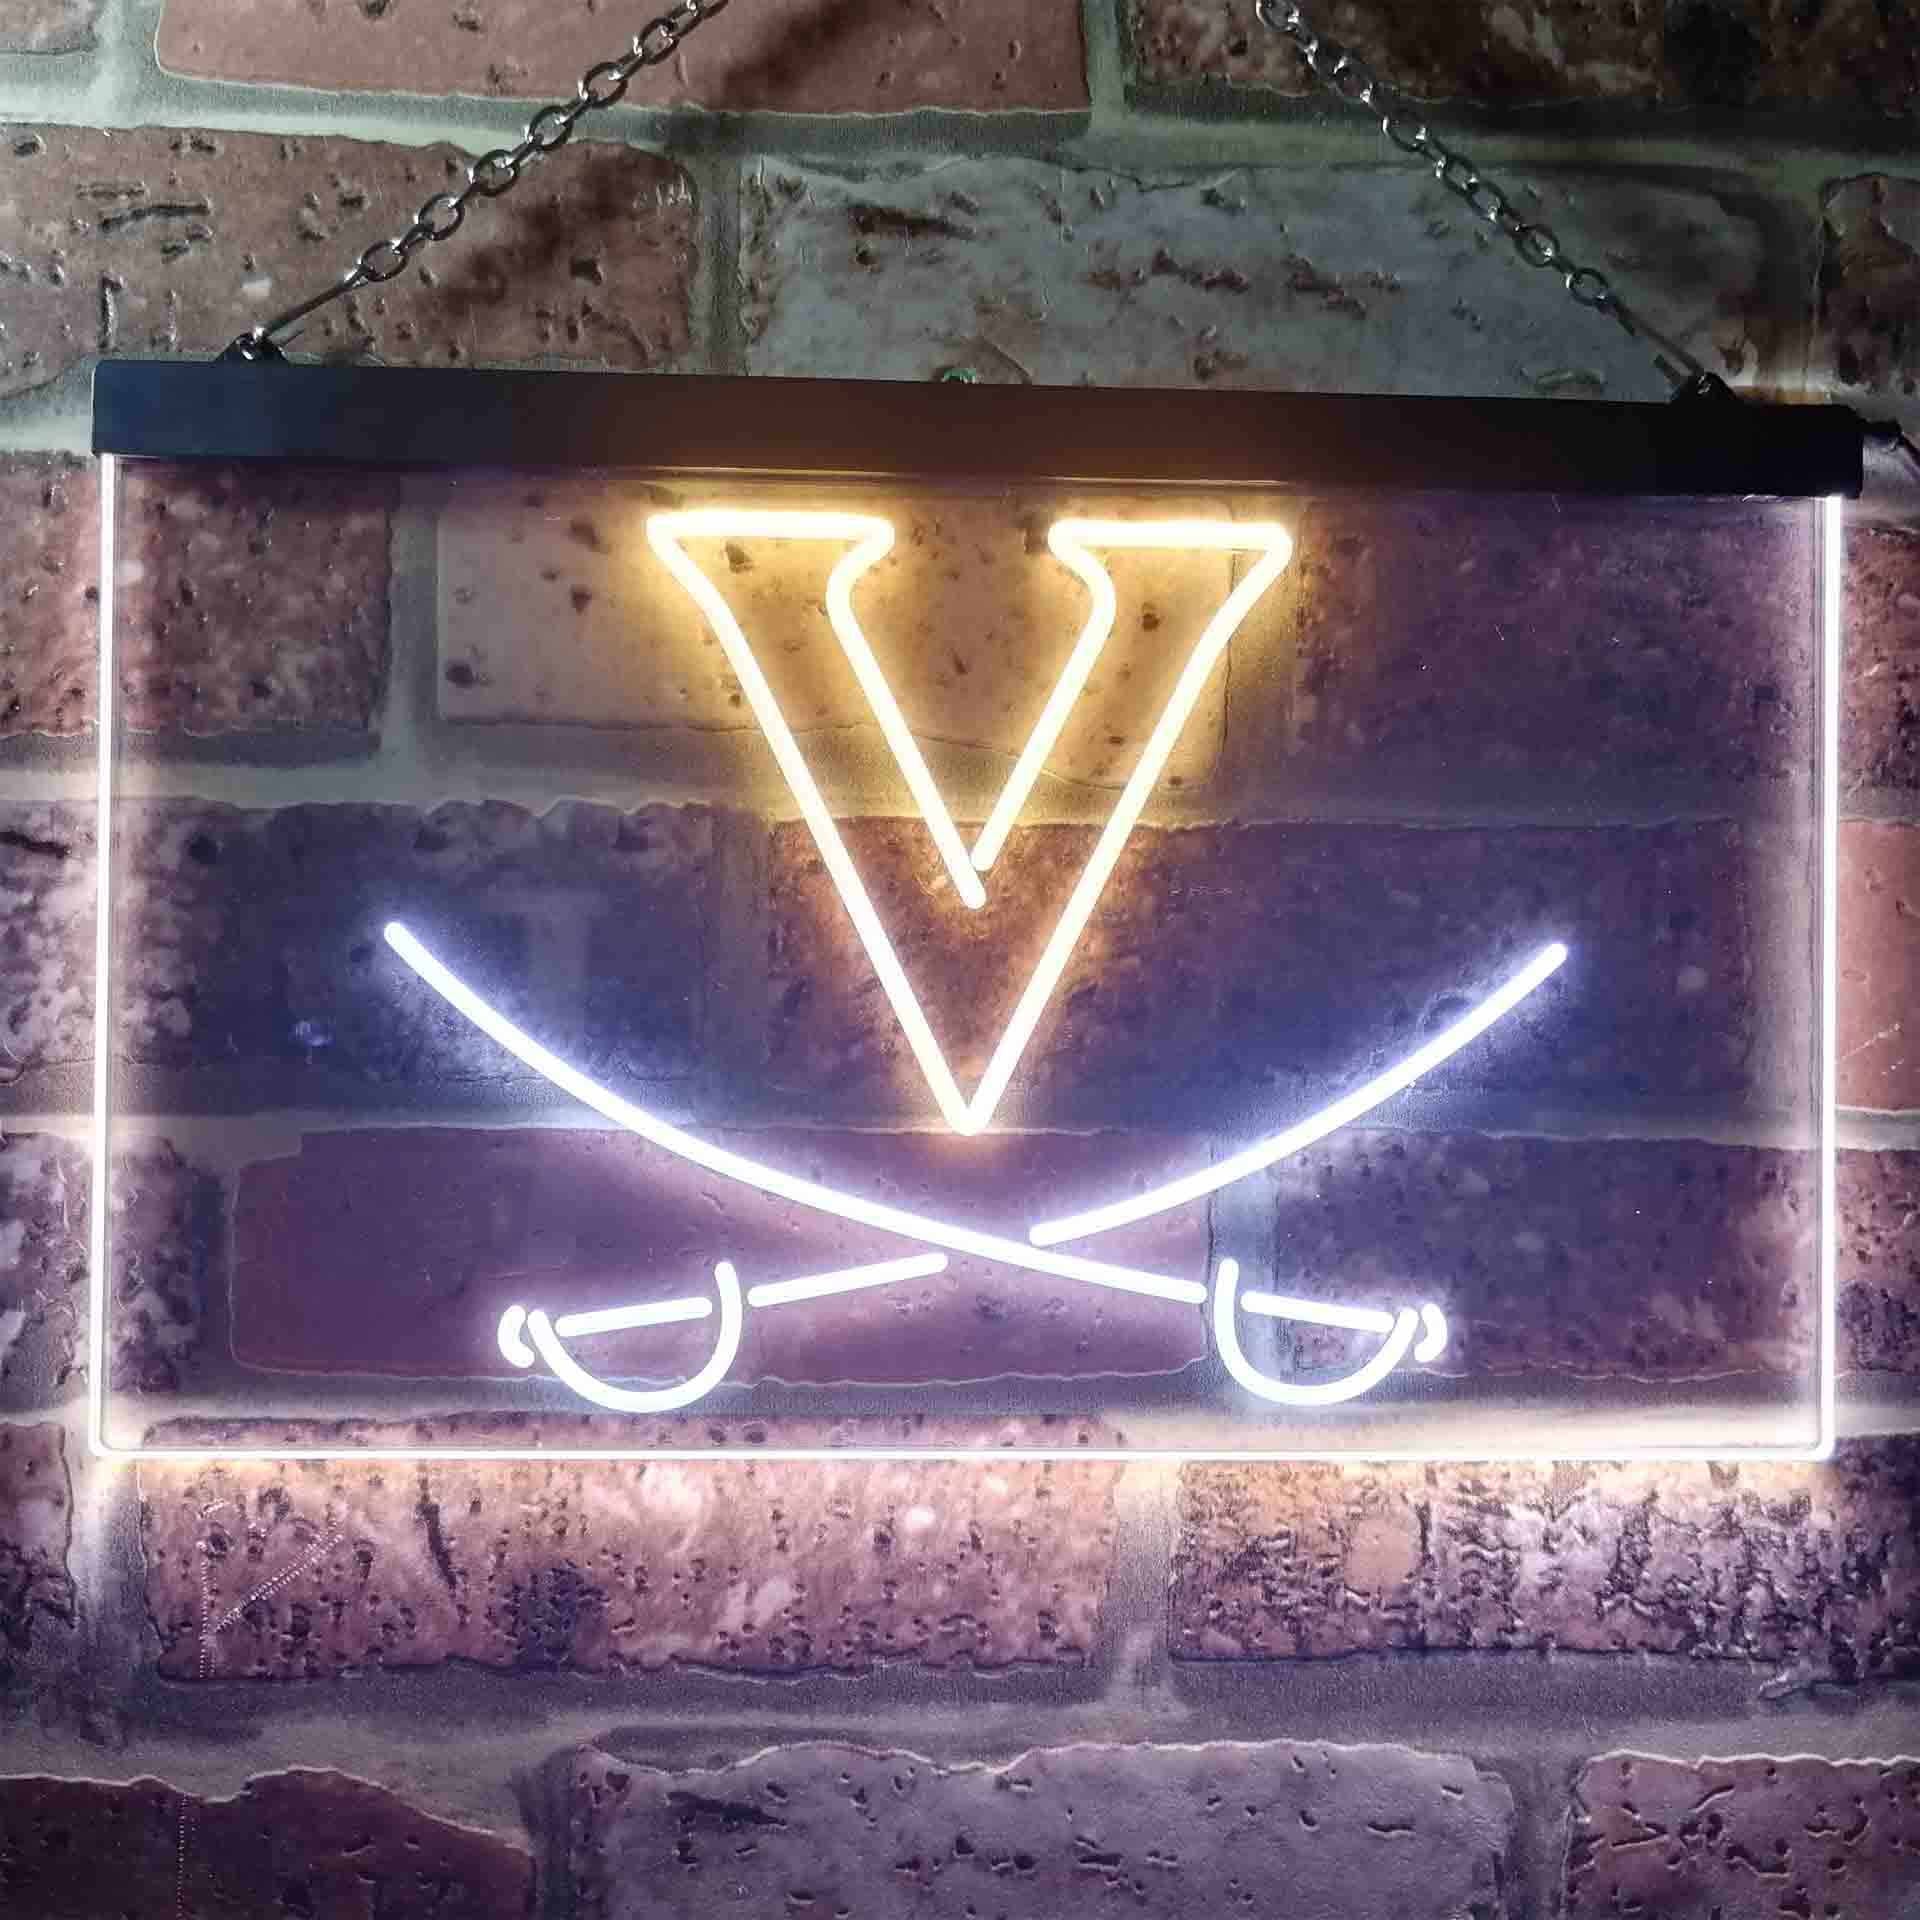 University of Virginia Men's Lacrosse Neon-Like LED Sign